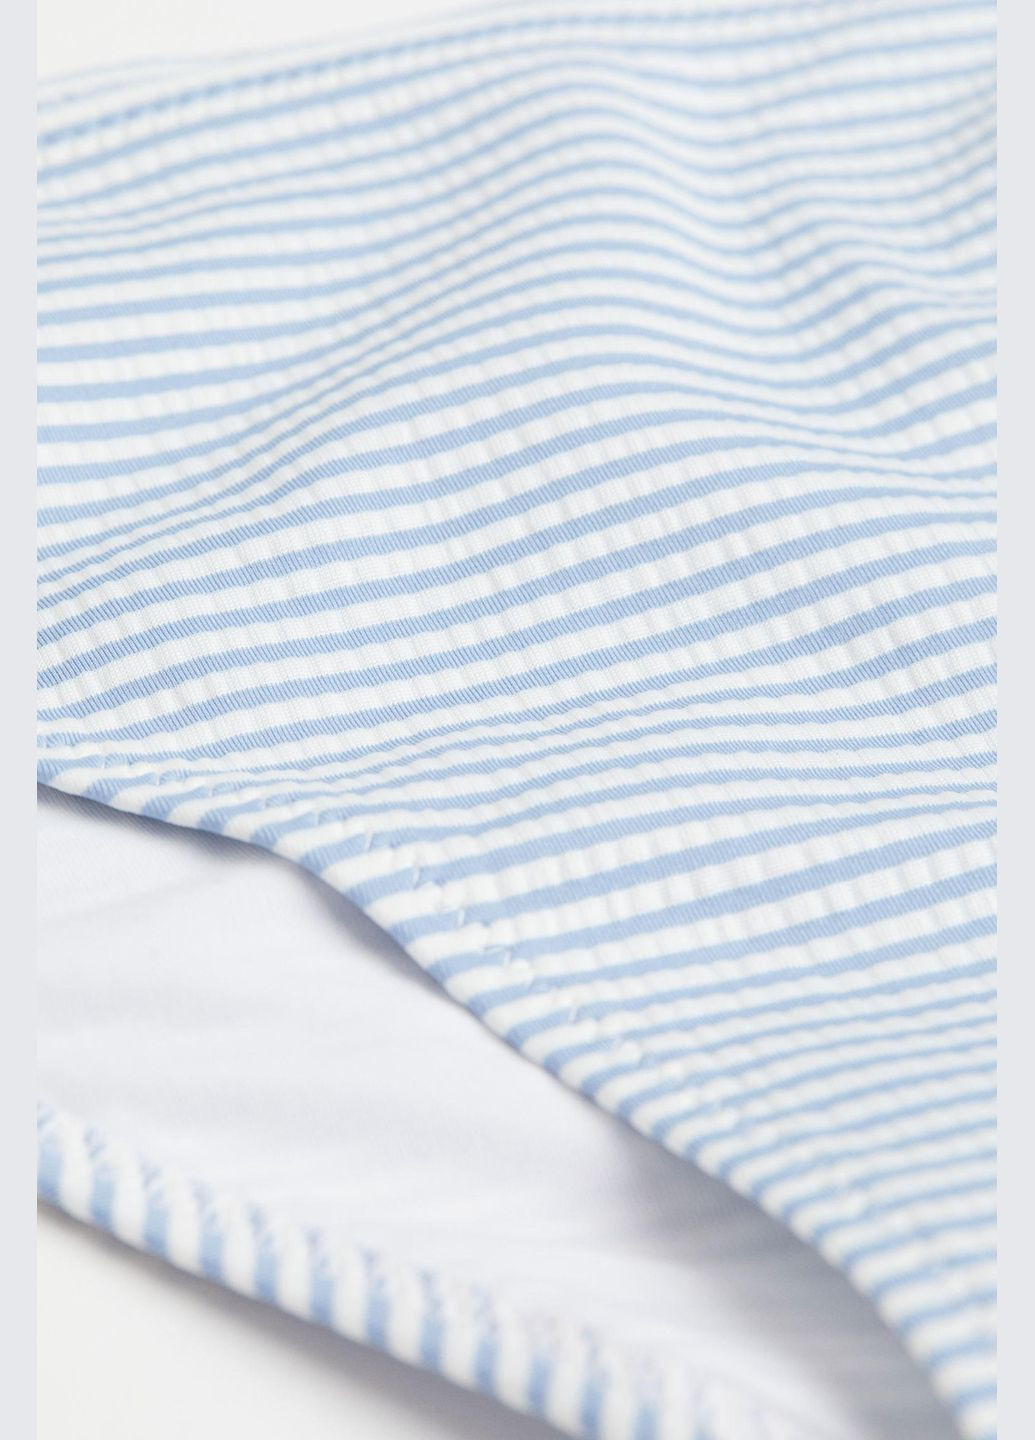 Белые купальные трусики-плавки,белый-голубой в полоску, H&M